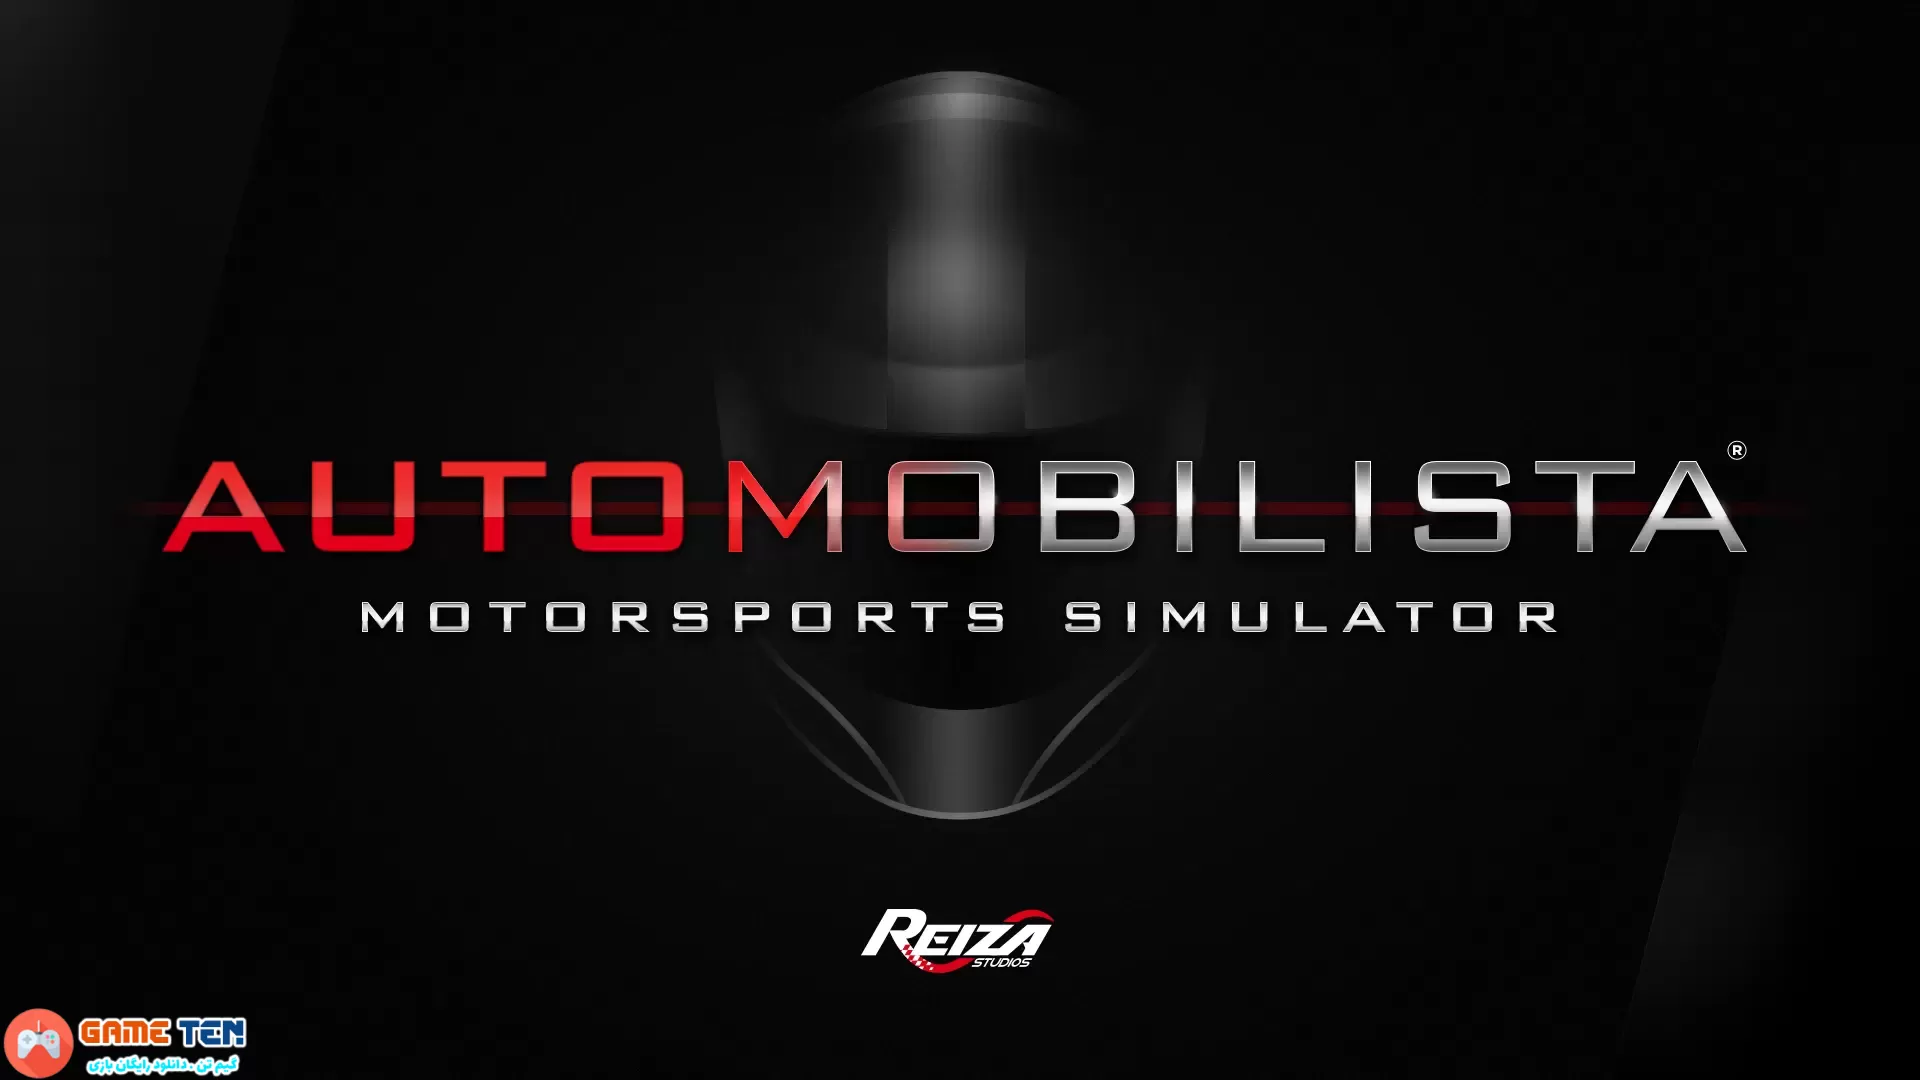 دانلود بازی Automobilista Snetterton + Update v1.5.3 برای کامپیوتر